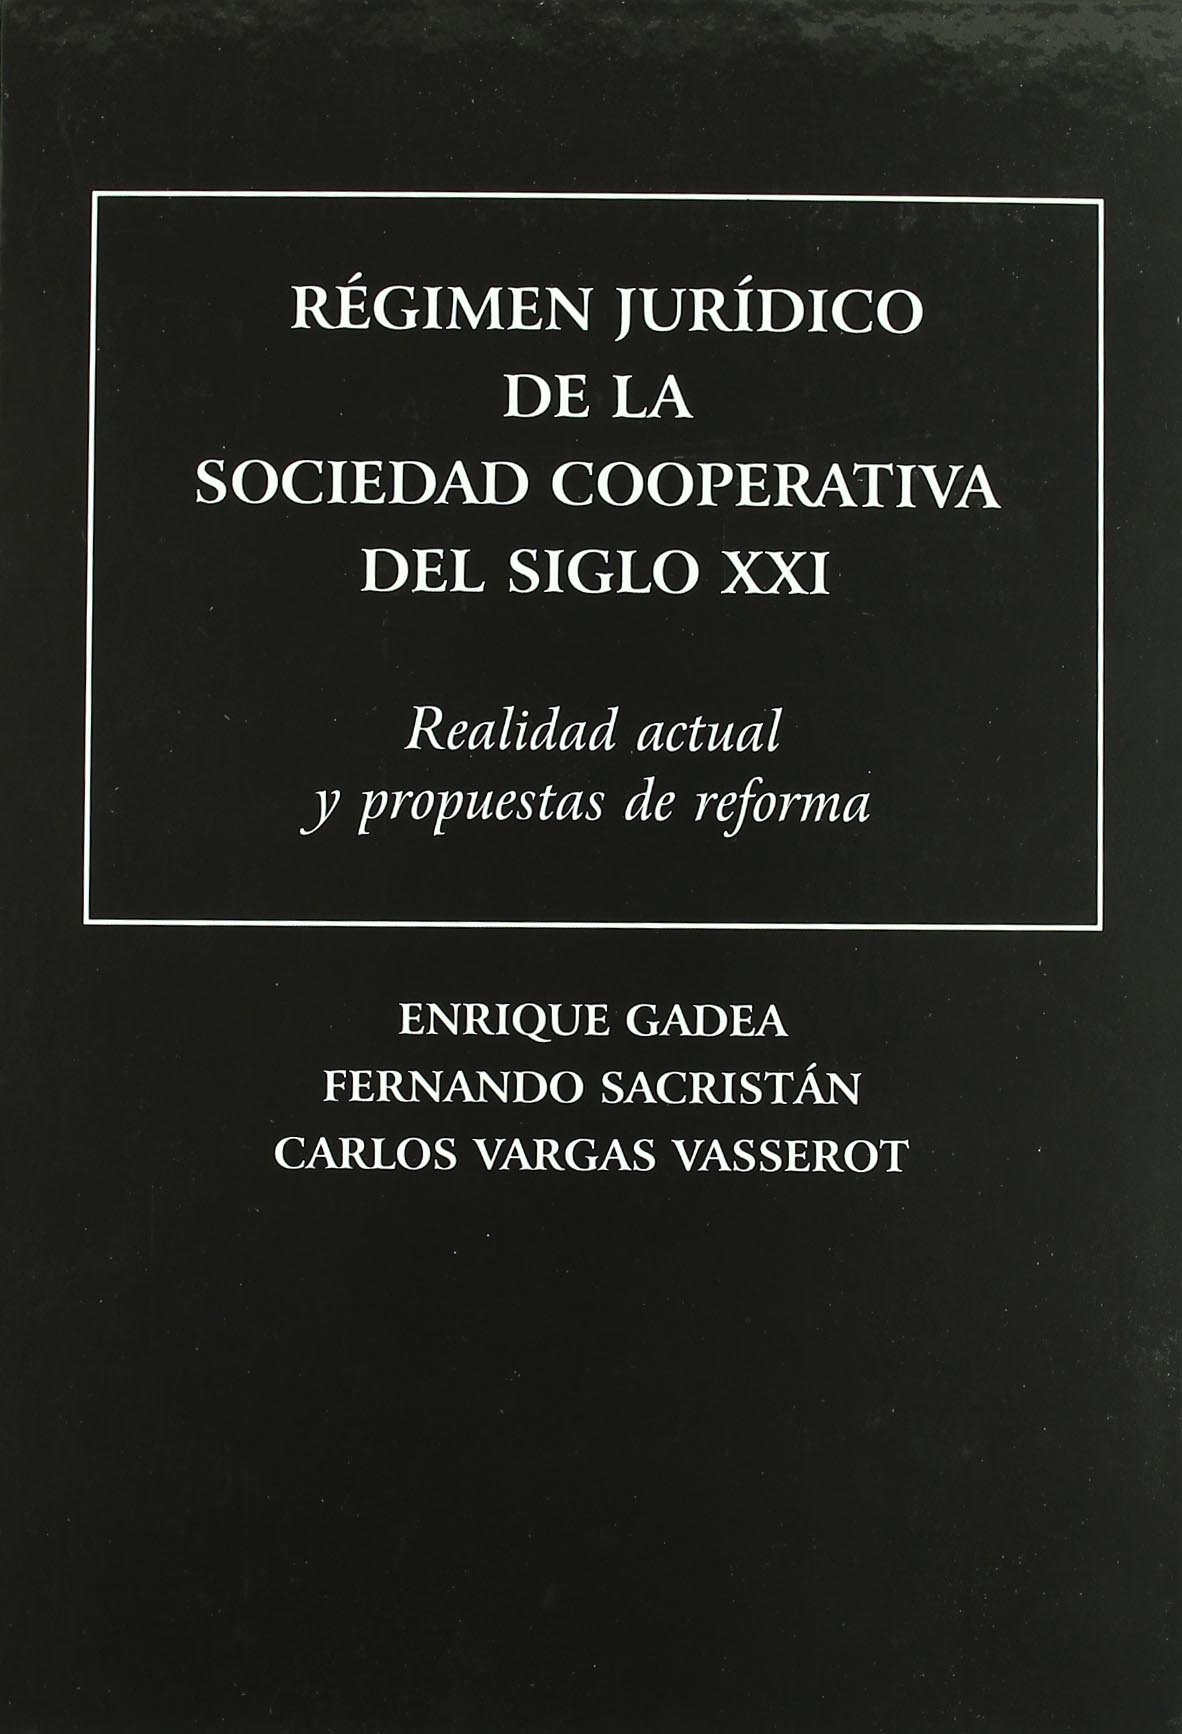 Imagen de portada del libro Régimen jurídico de la sociedad cooperativa del siglo XXI